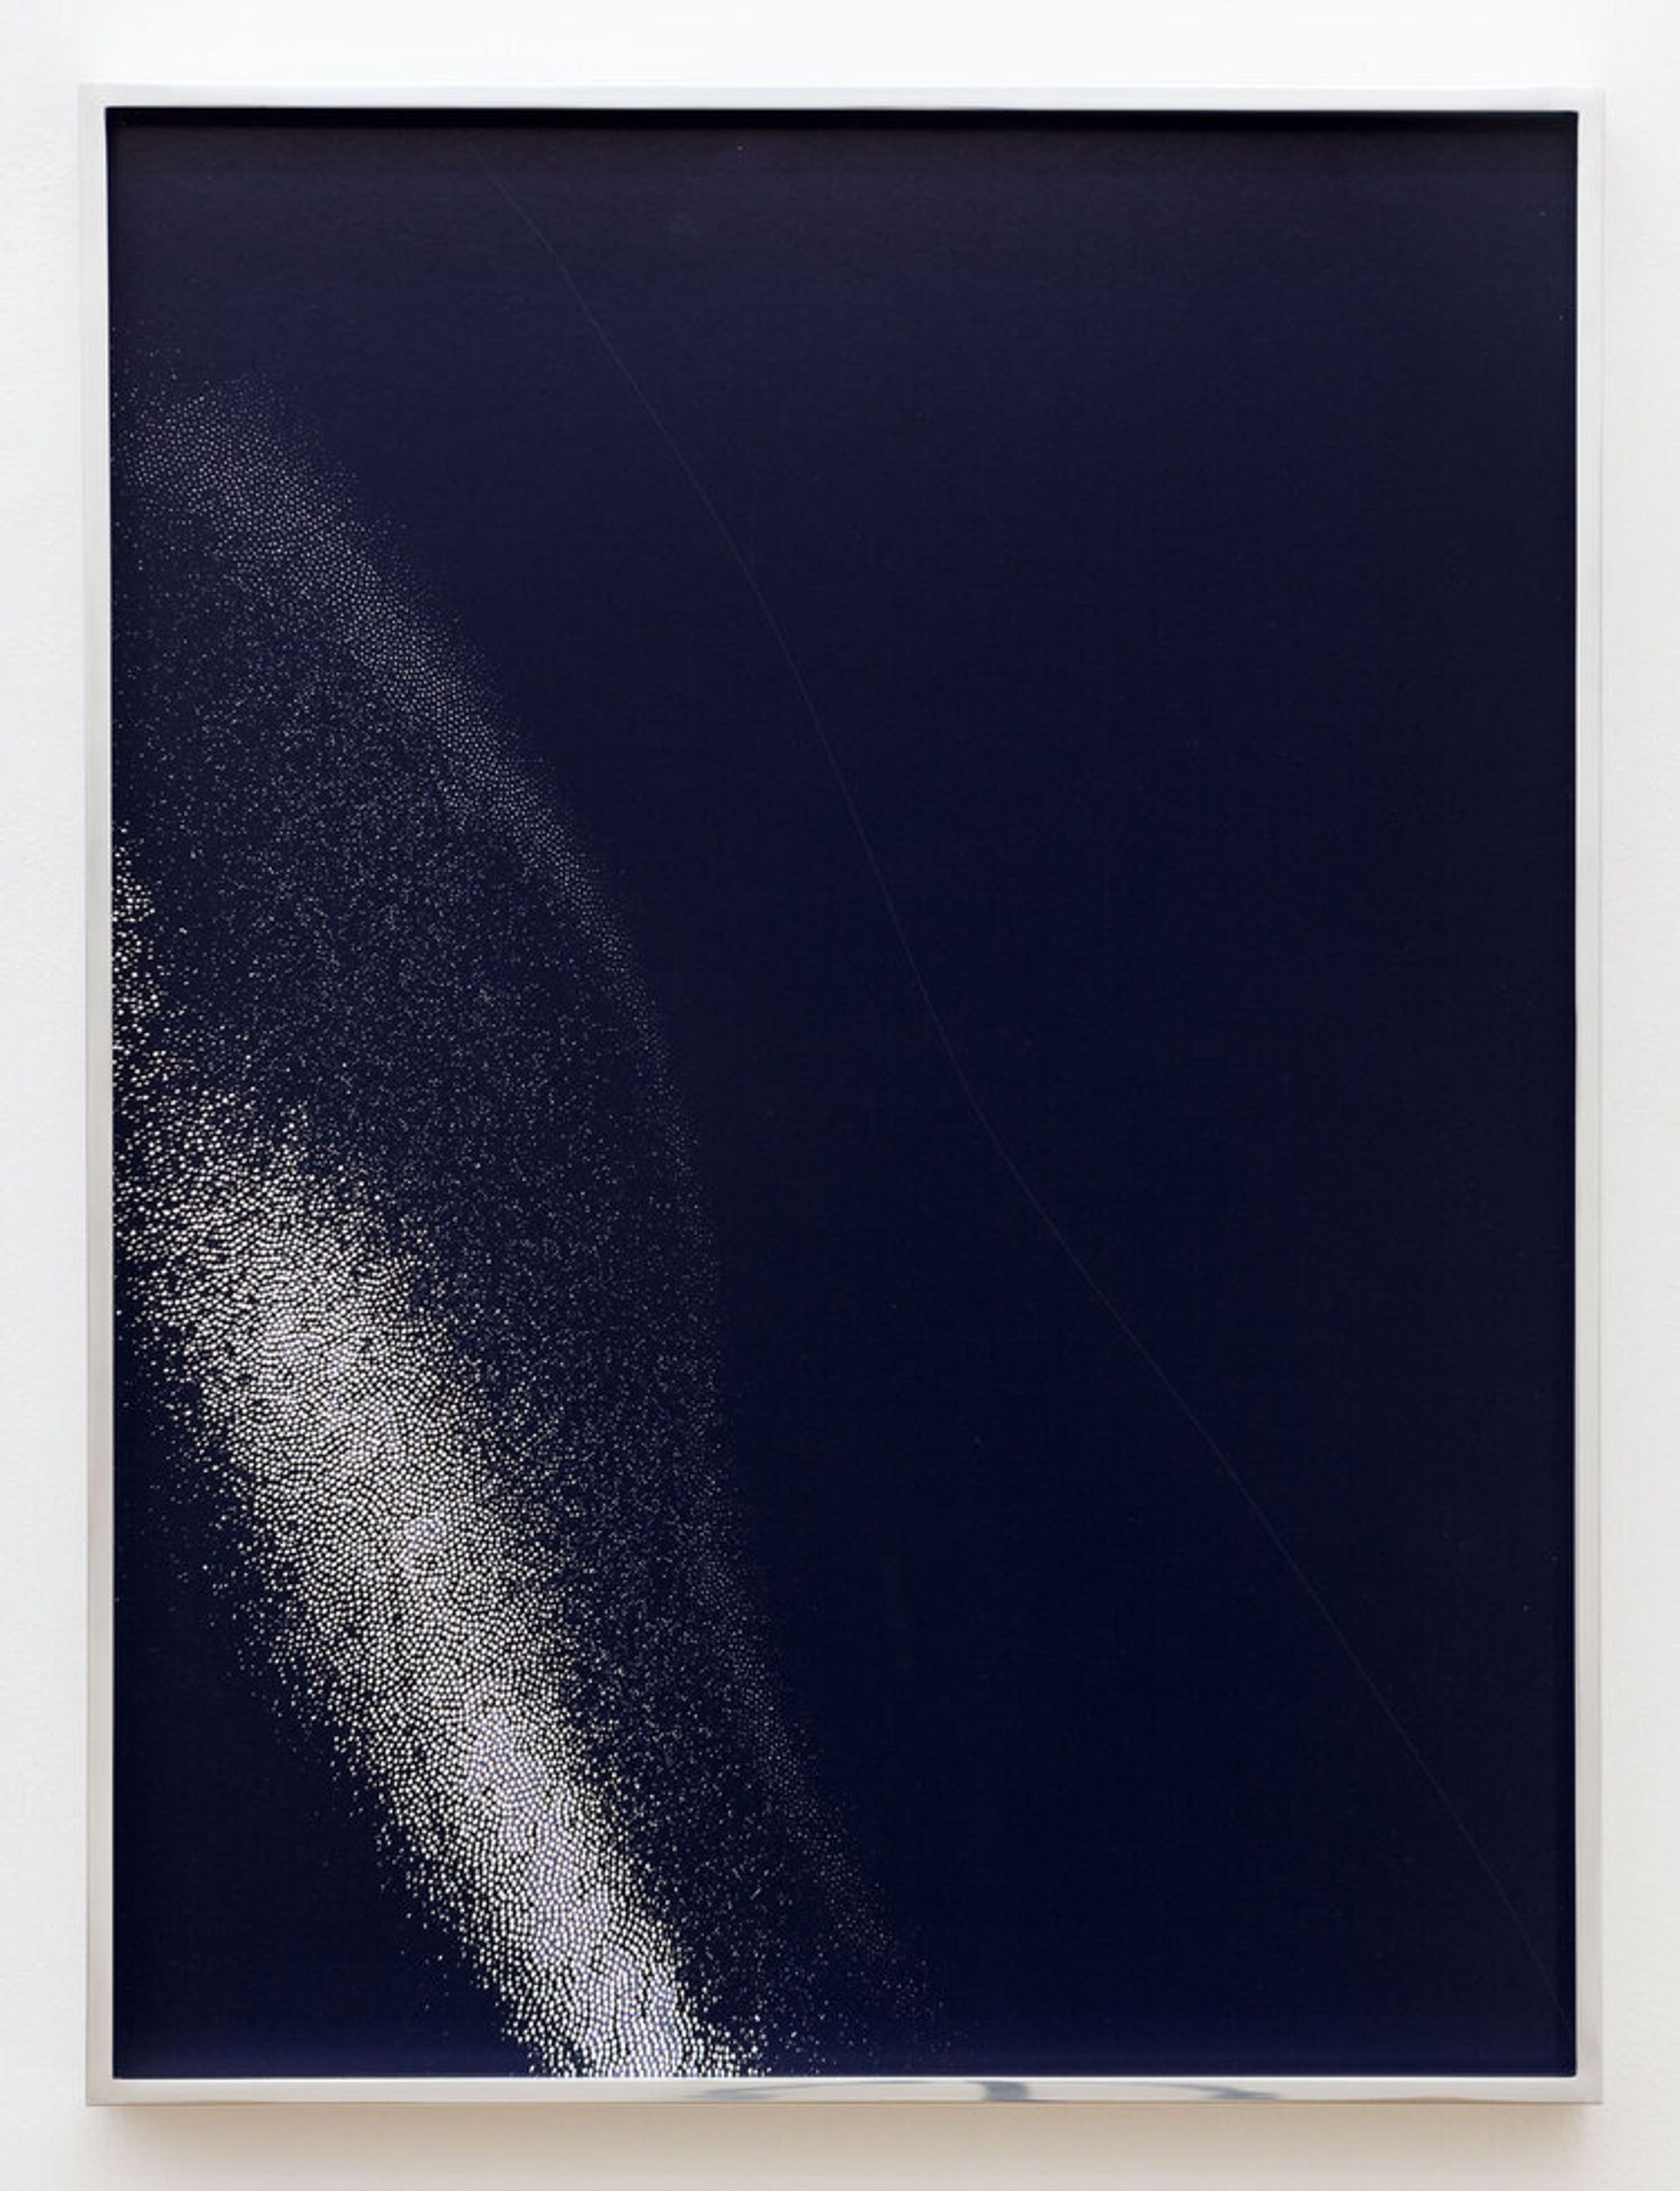 Anna Vogel, Skin I, 2019, inkjet print on backlight foil framed in polished chrome, 60 × 45 cm, edition 5 + 2AP
